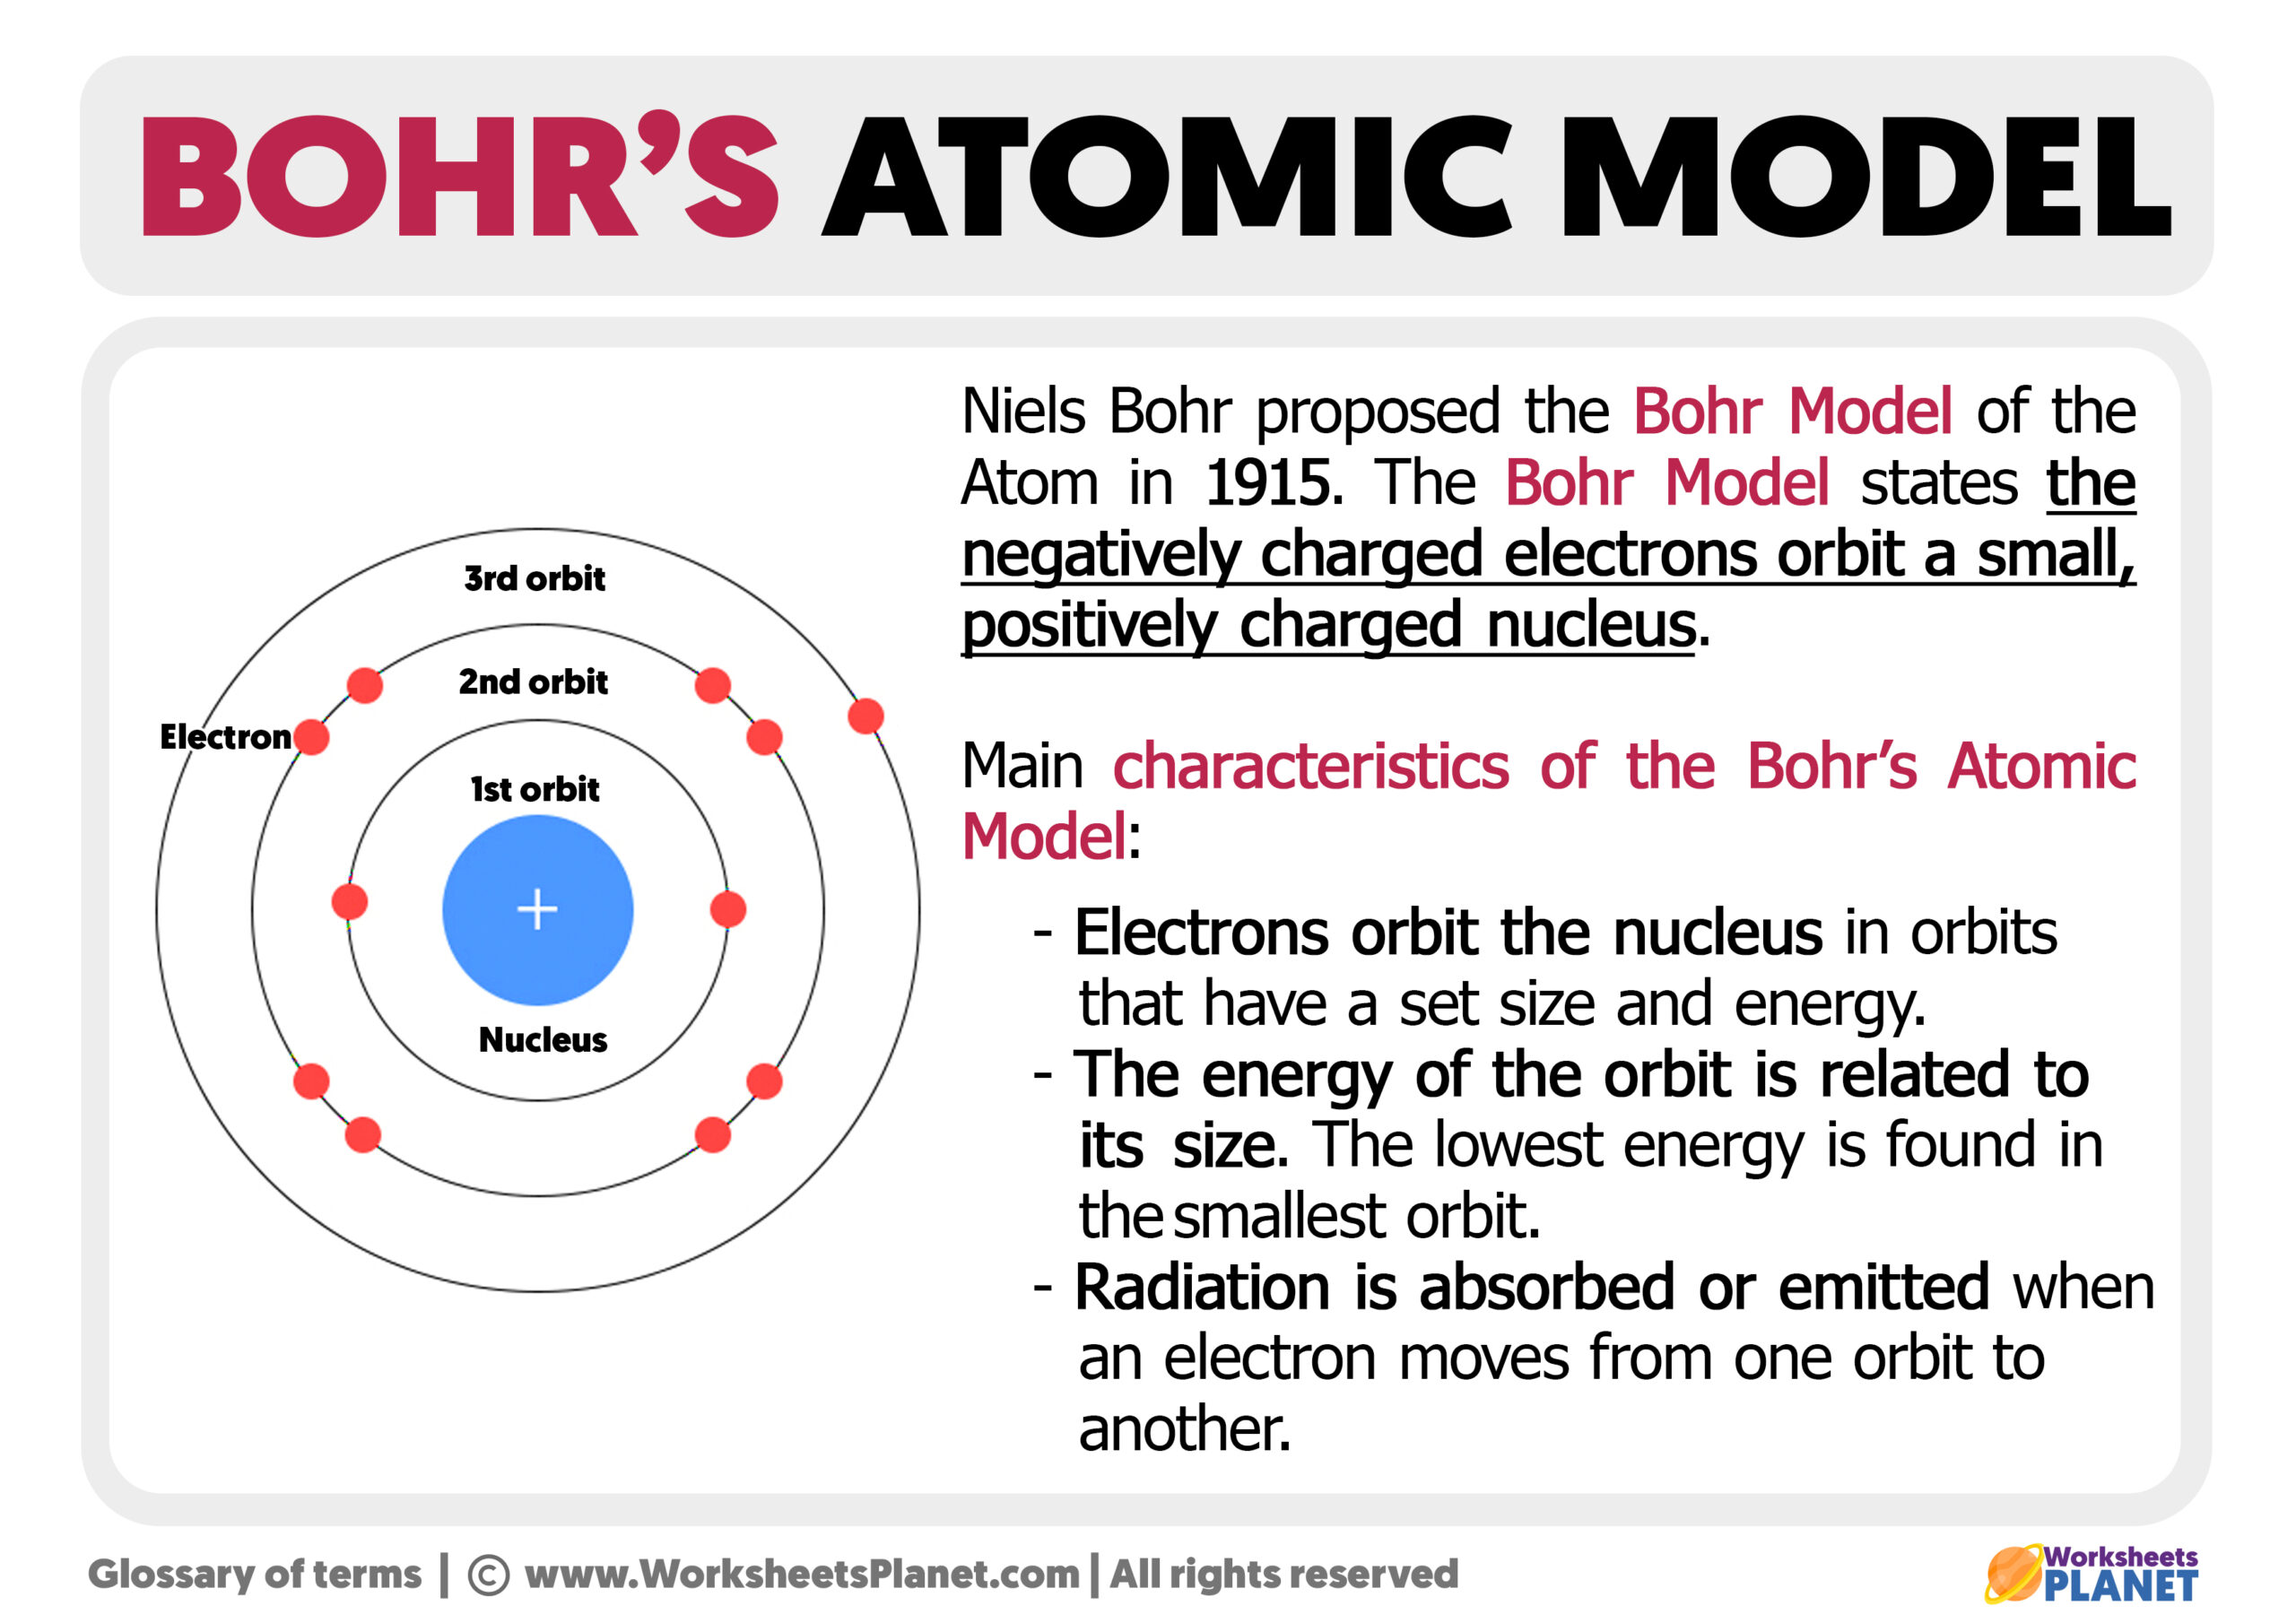 Bohr's Atomic Model